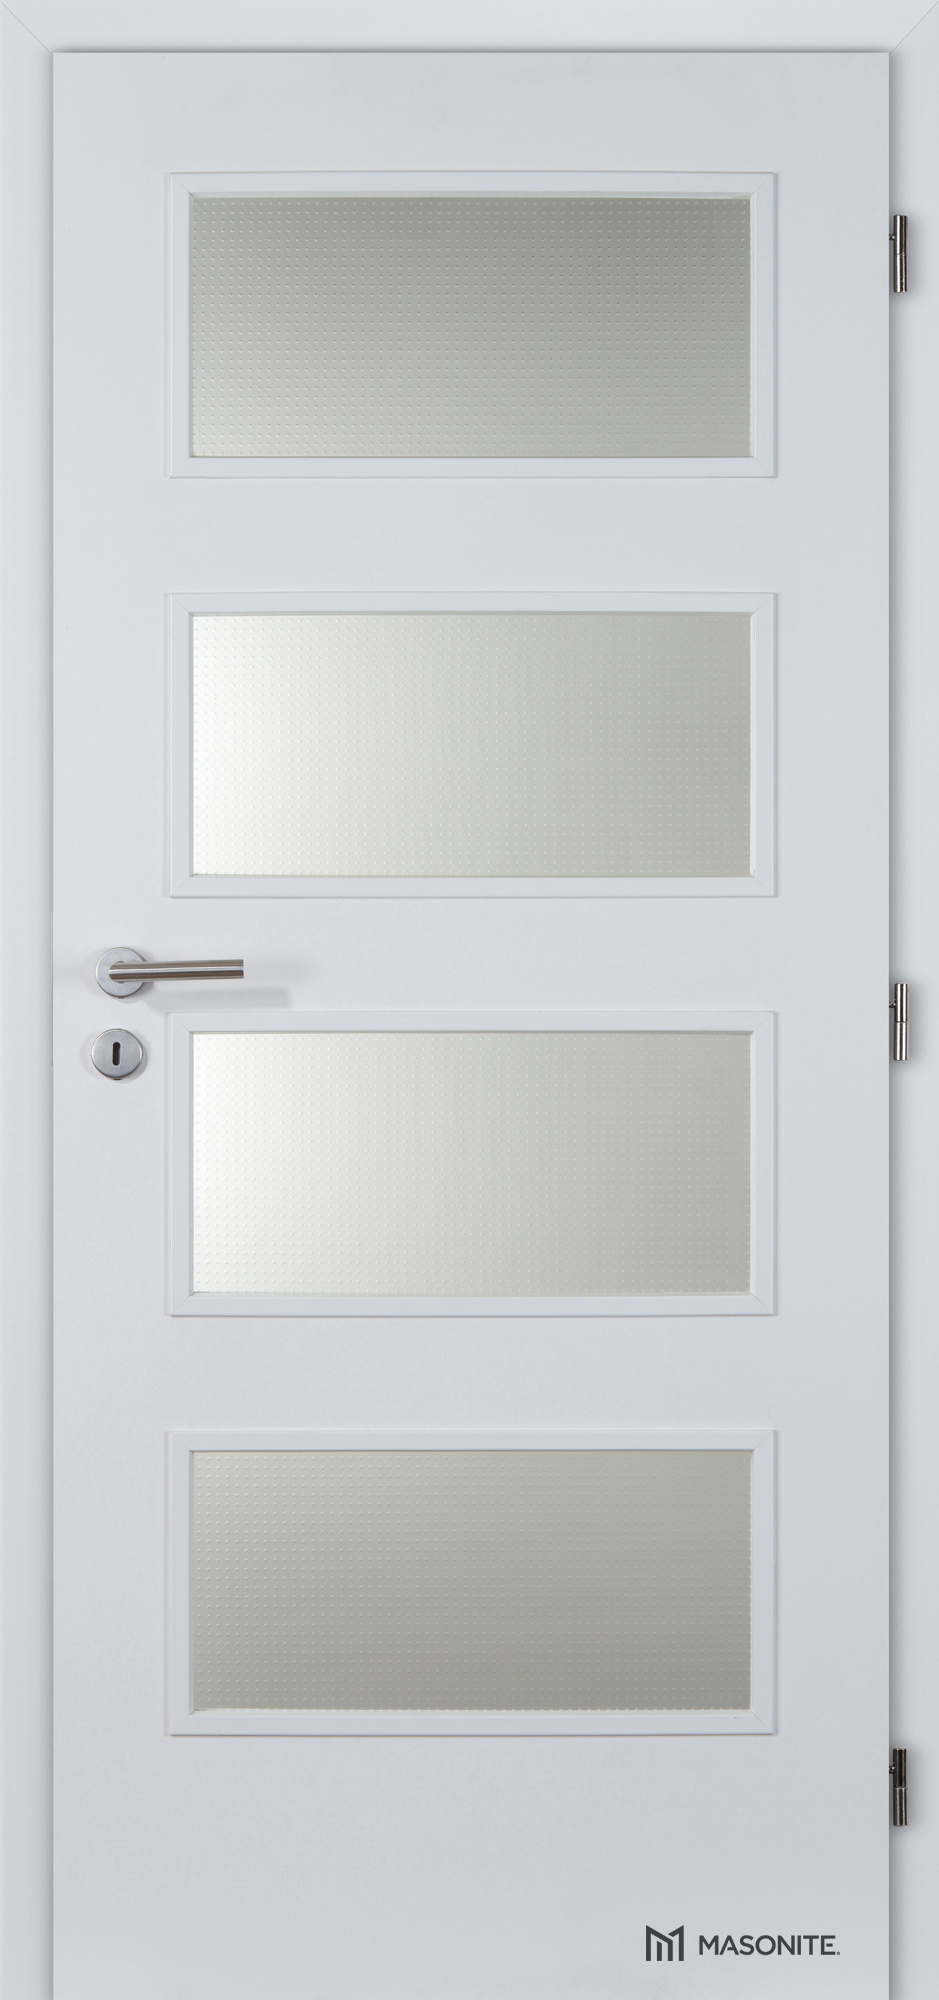 Dveře DTD DOMINANT 4x piskované sklo CPL bílá